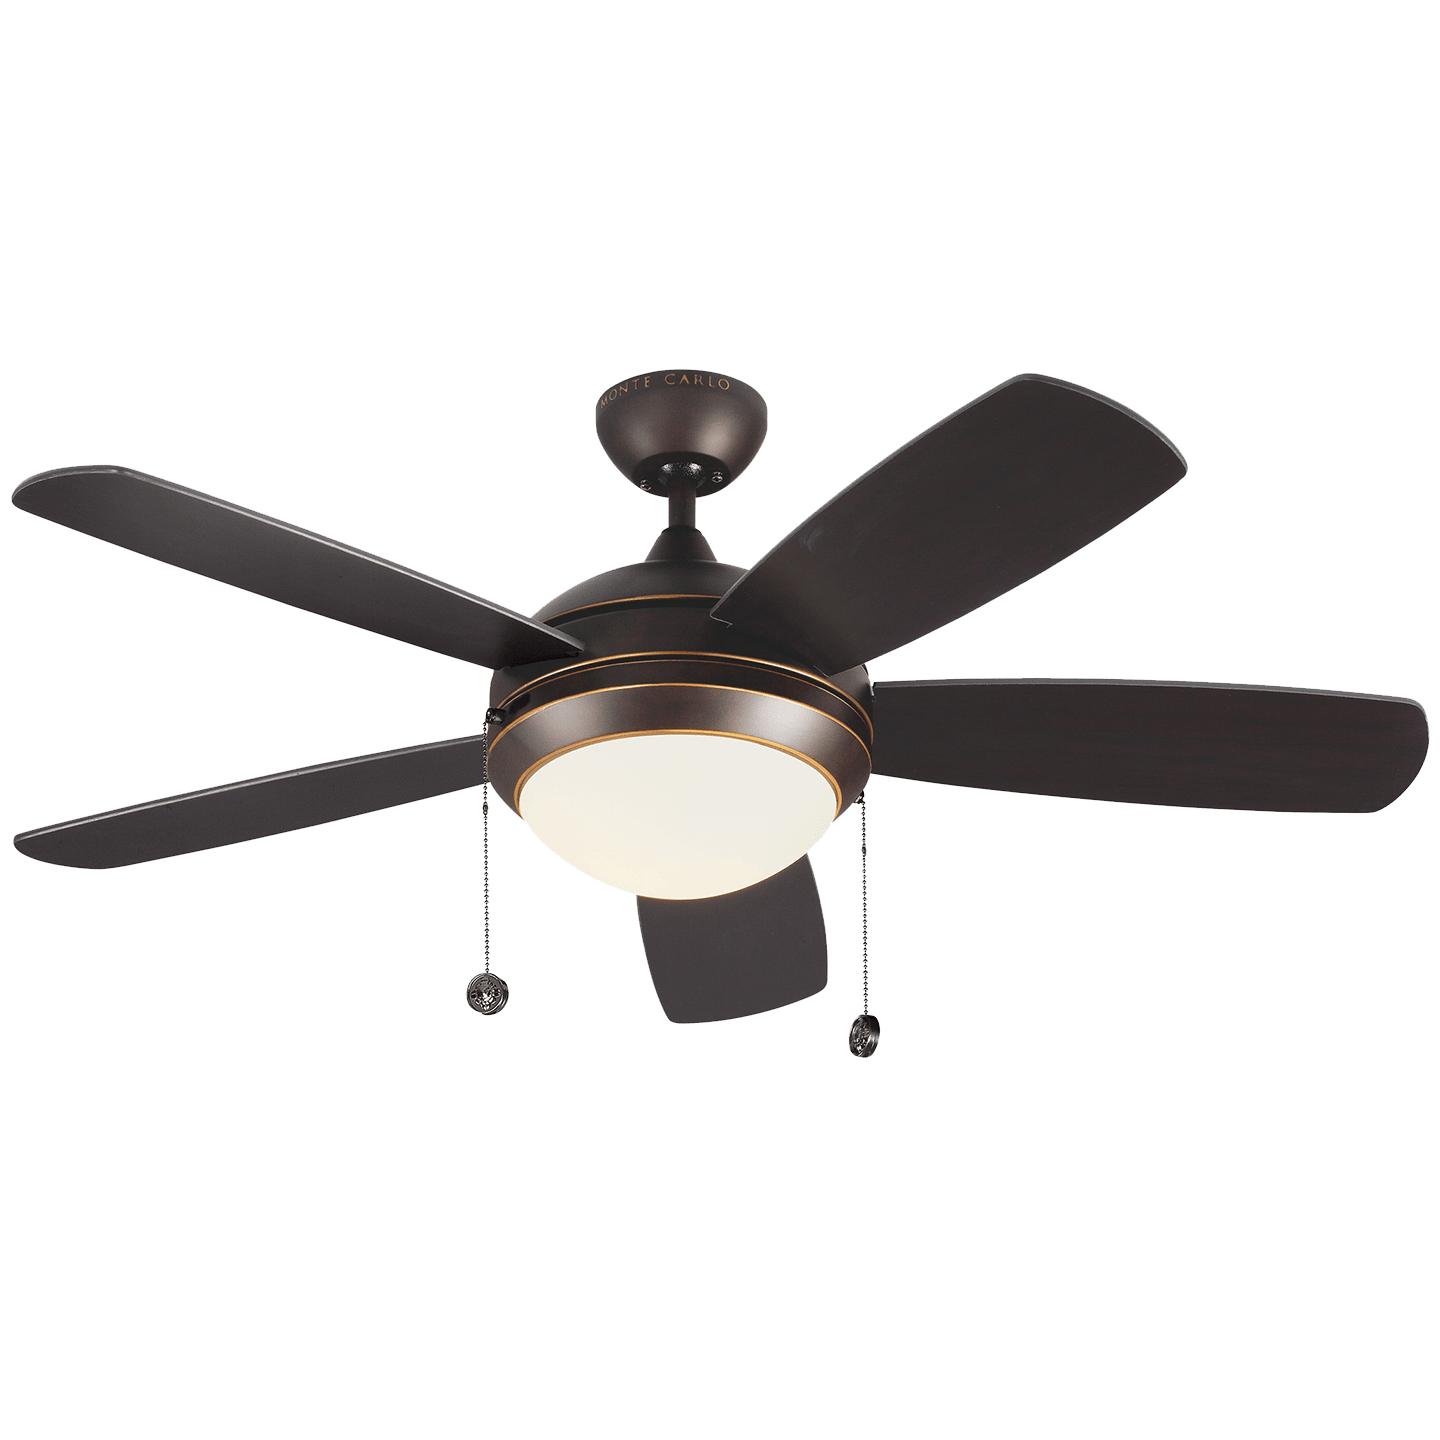 Купить Потолочный вентилятор Discus Classic 44" LED Ceiling Fan в интернет-магазине roooms.ru